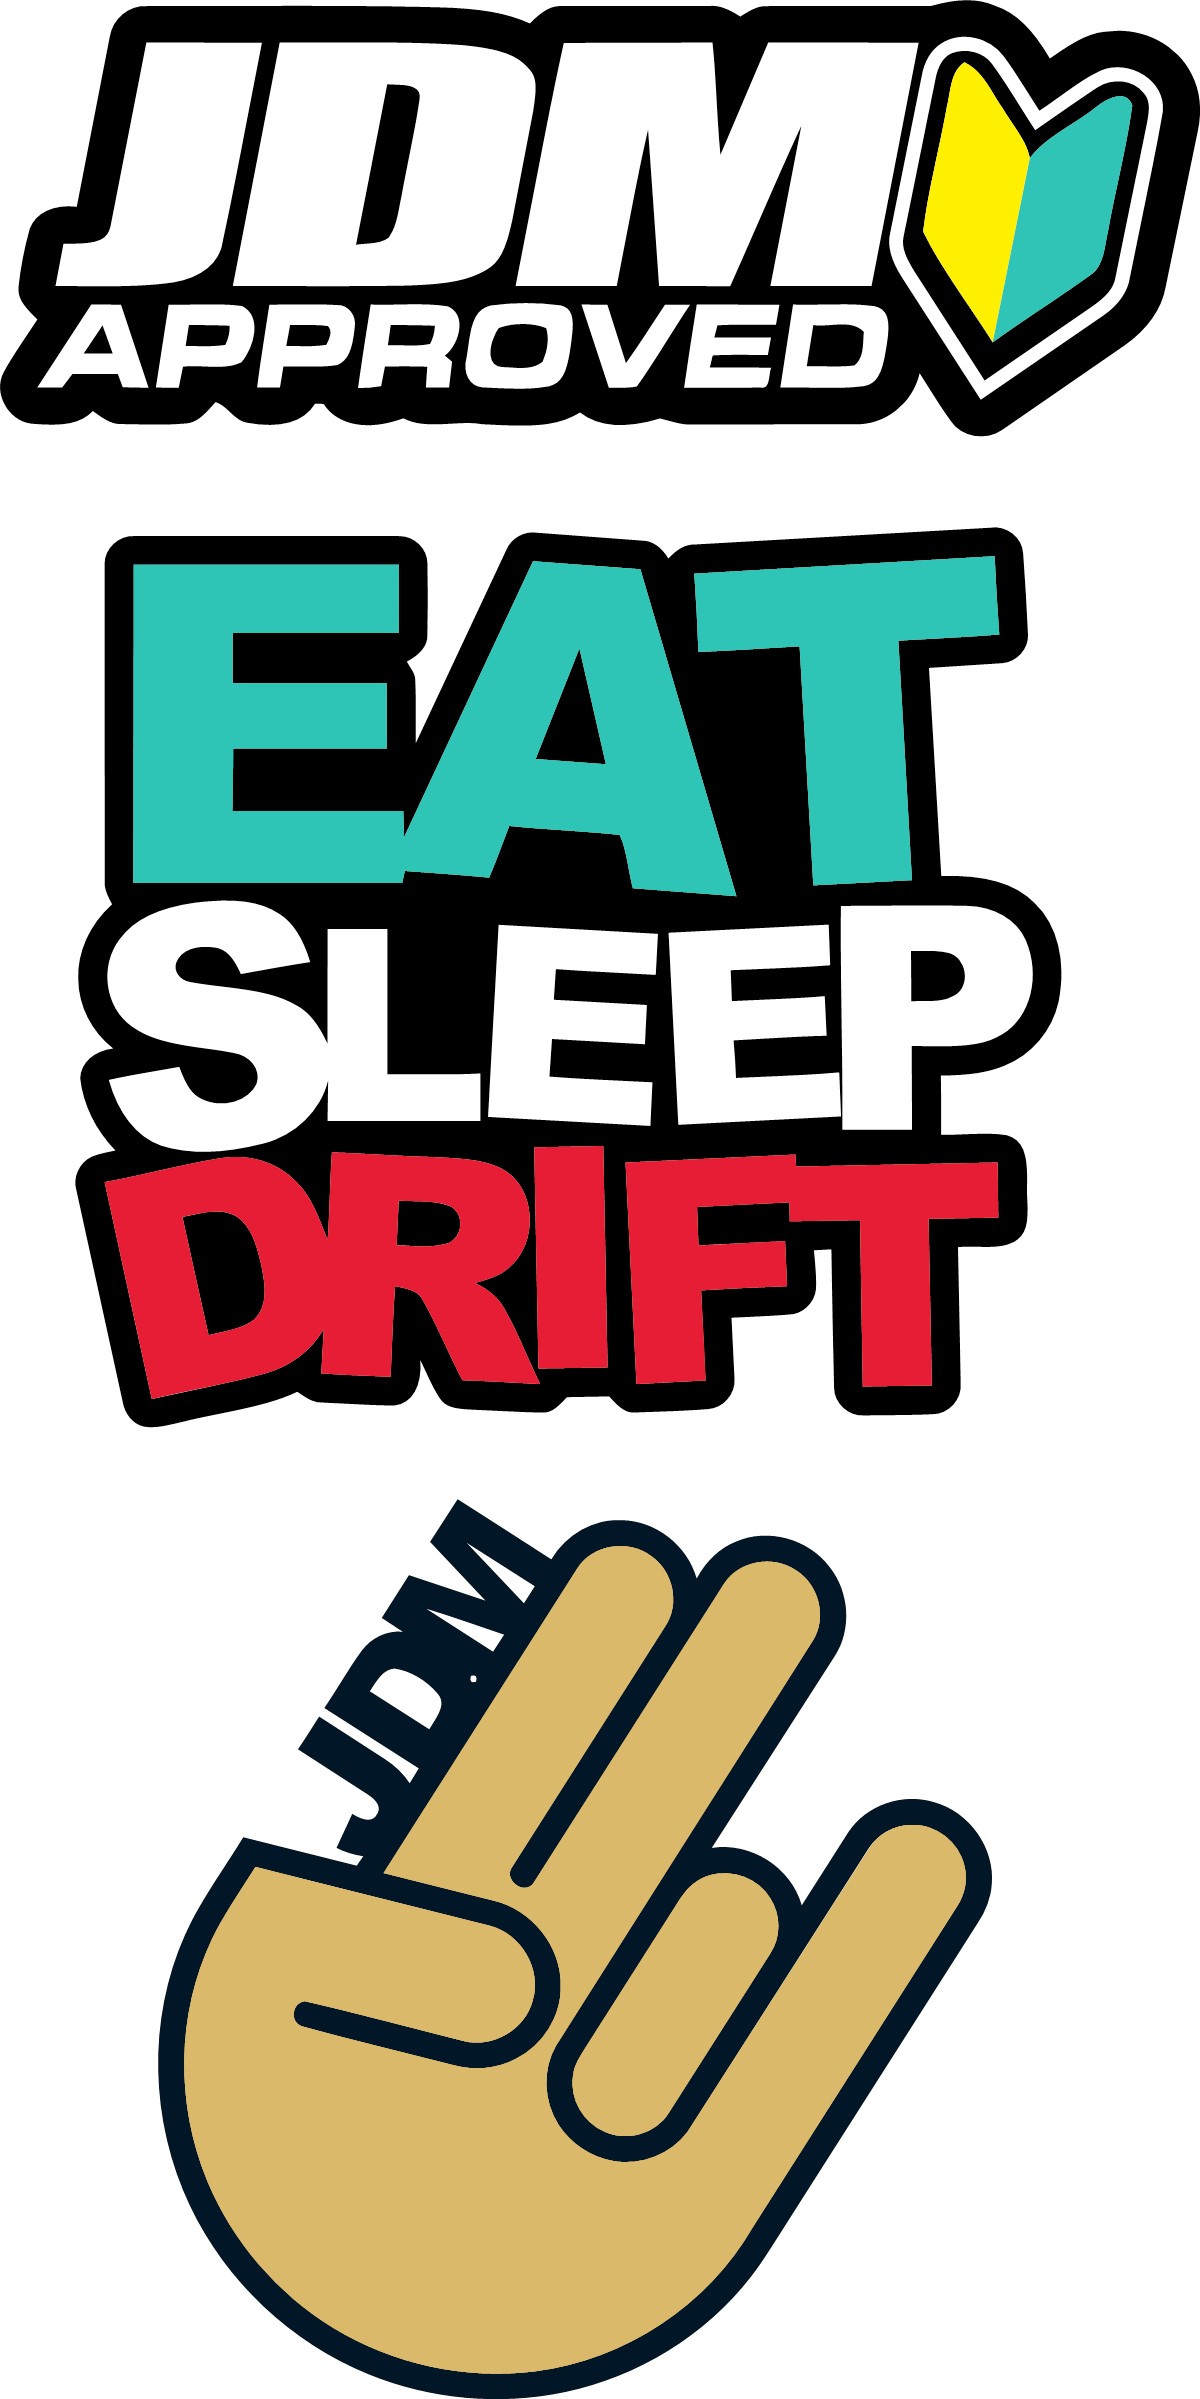 Jdm Sticker (Eat Sleep Drift)(Jdm Aprroved)(JDM Hand) 3 sticker in one